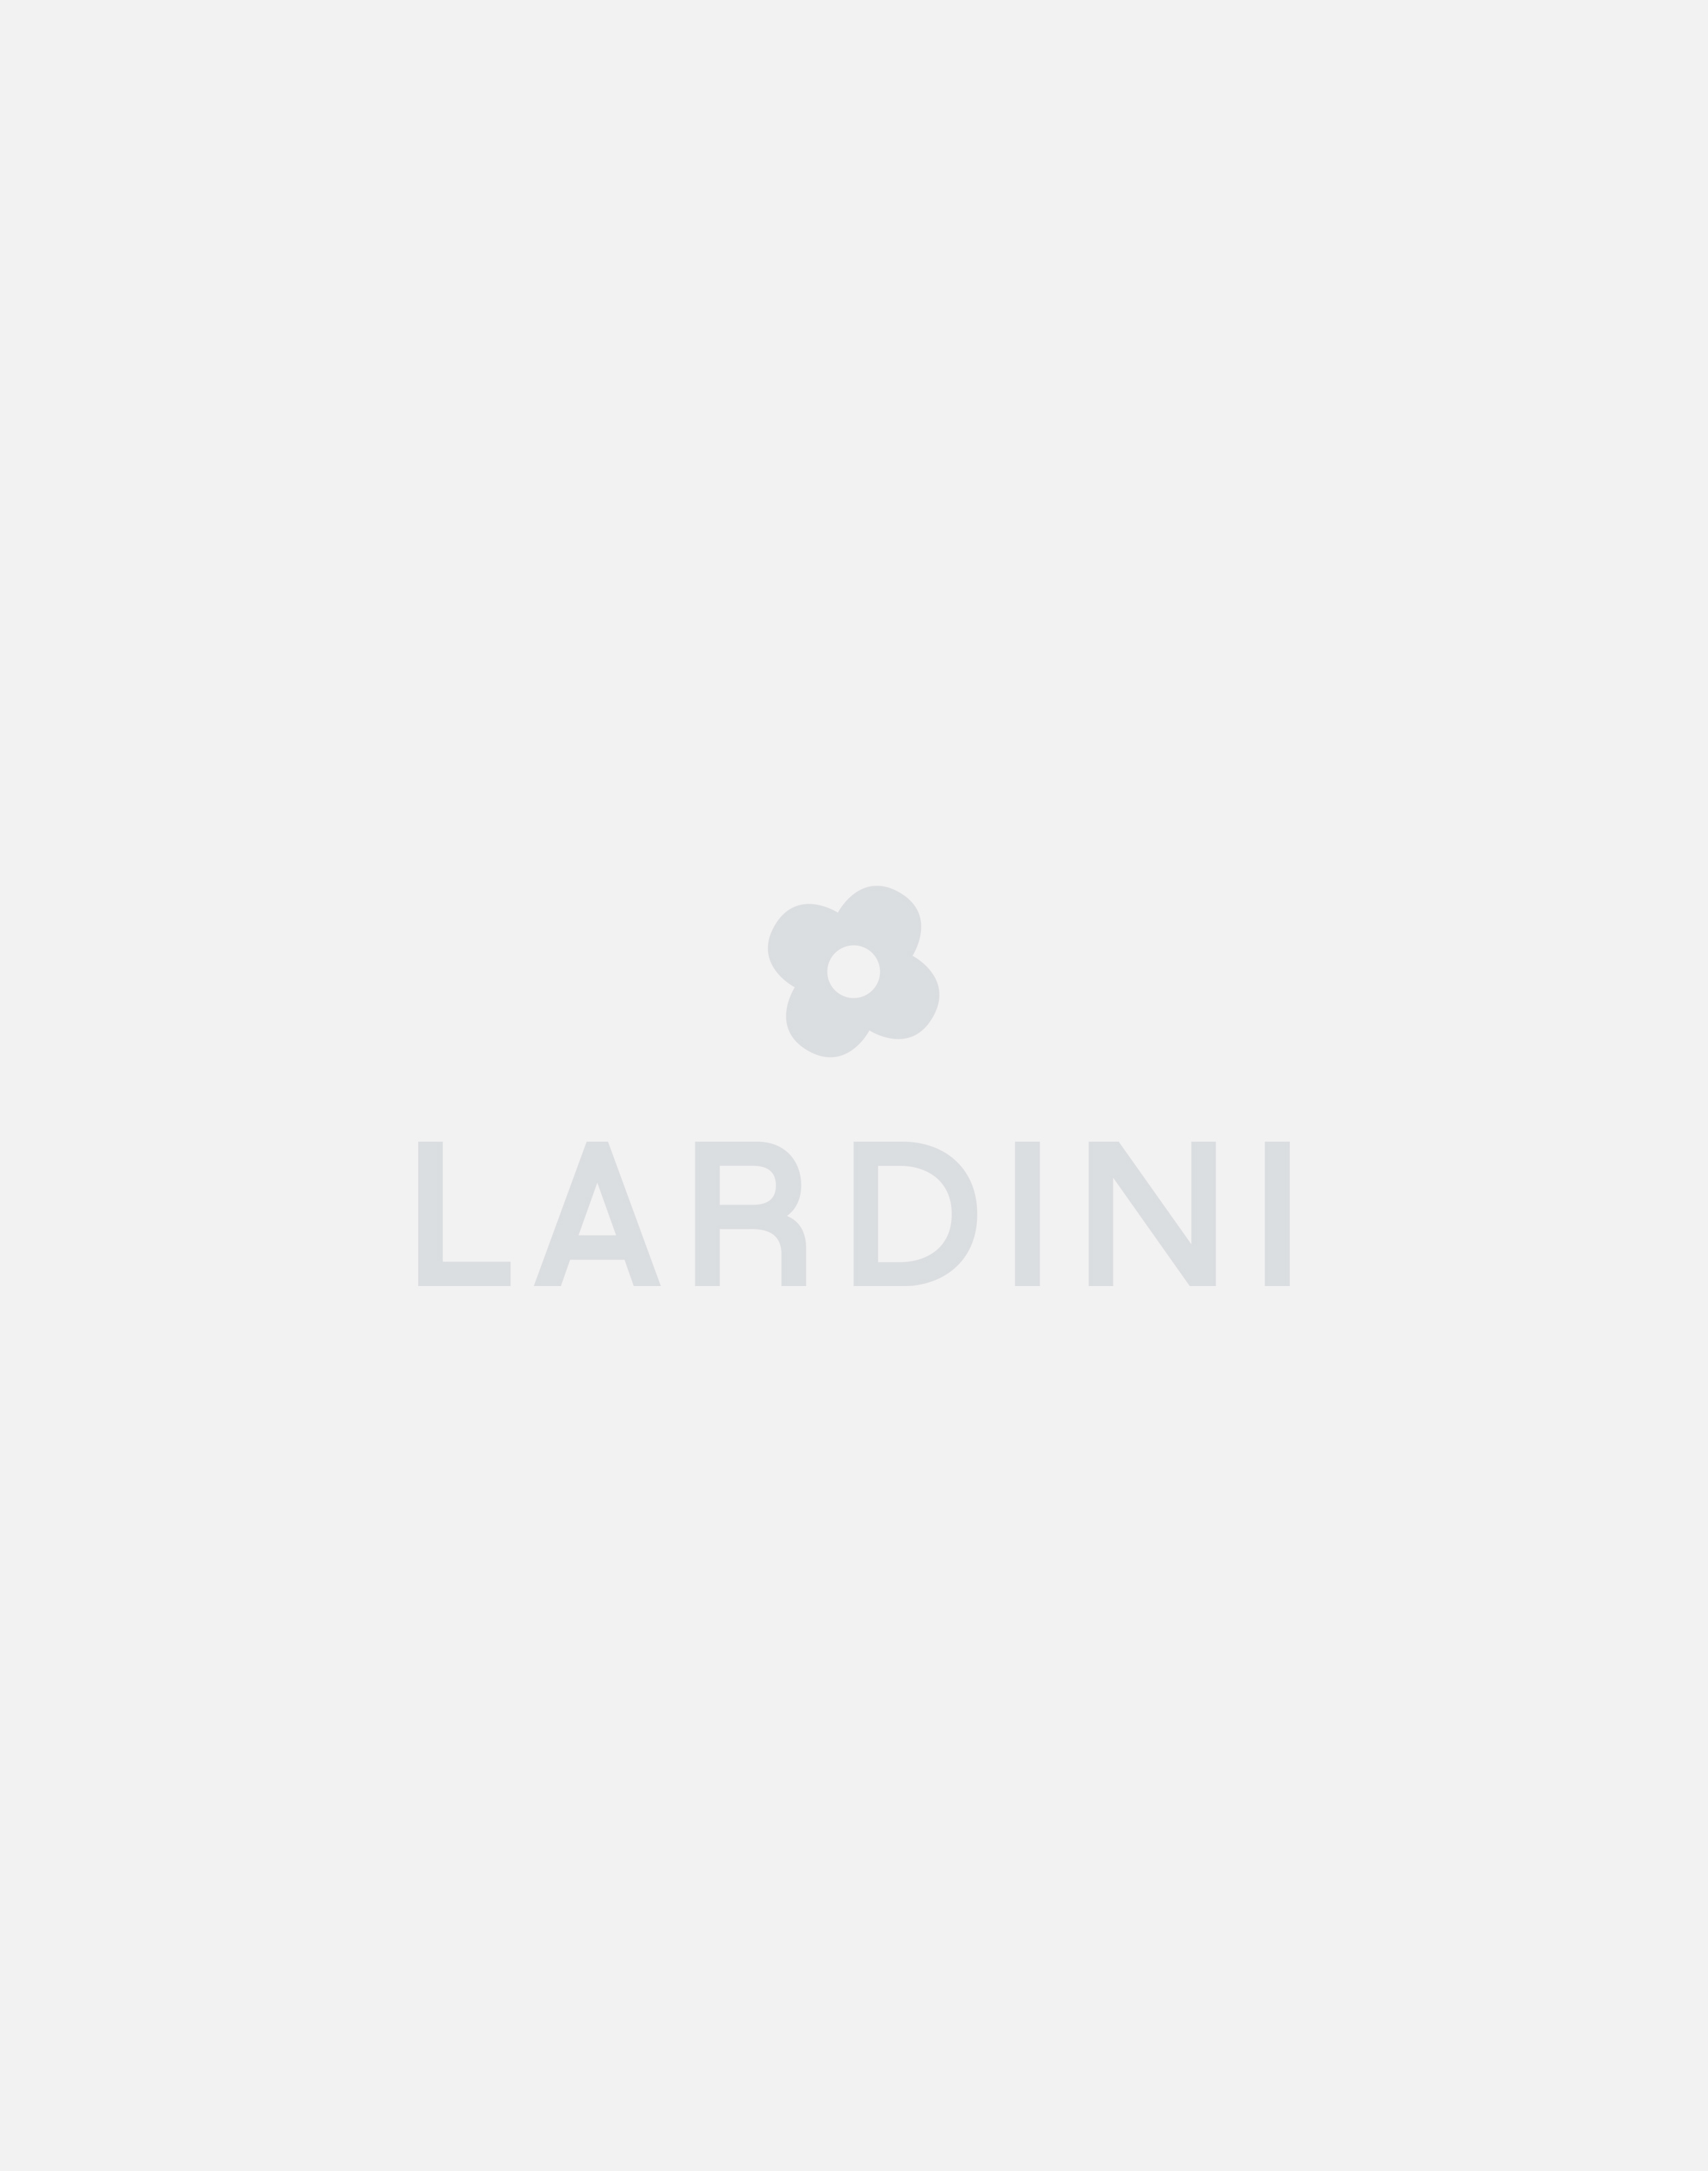 Cream knit jacket - Luigi Lardini capsule